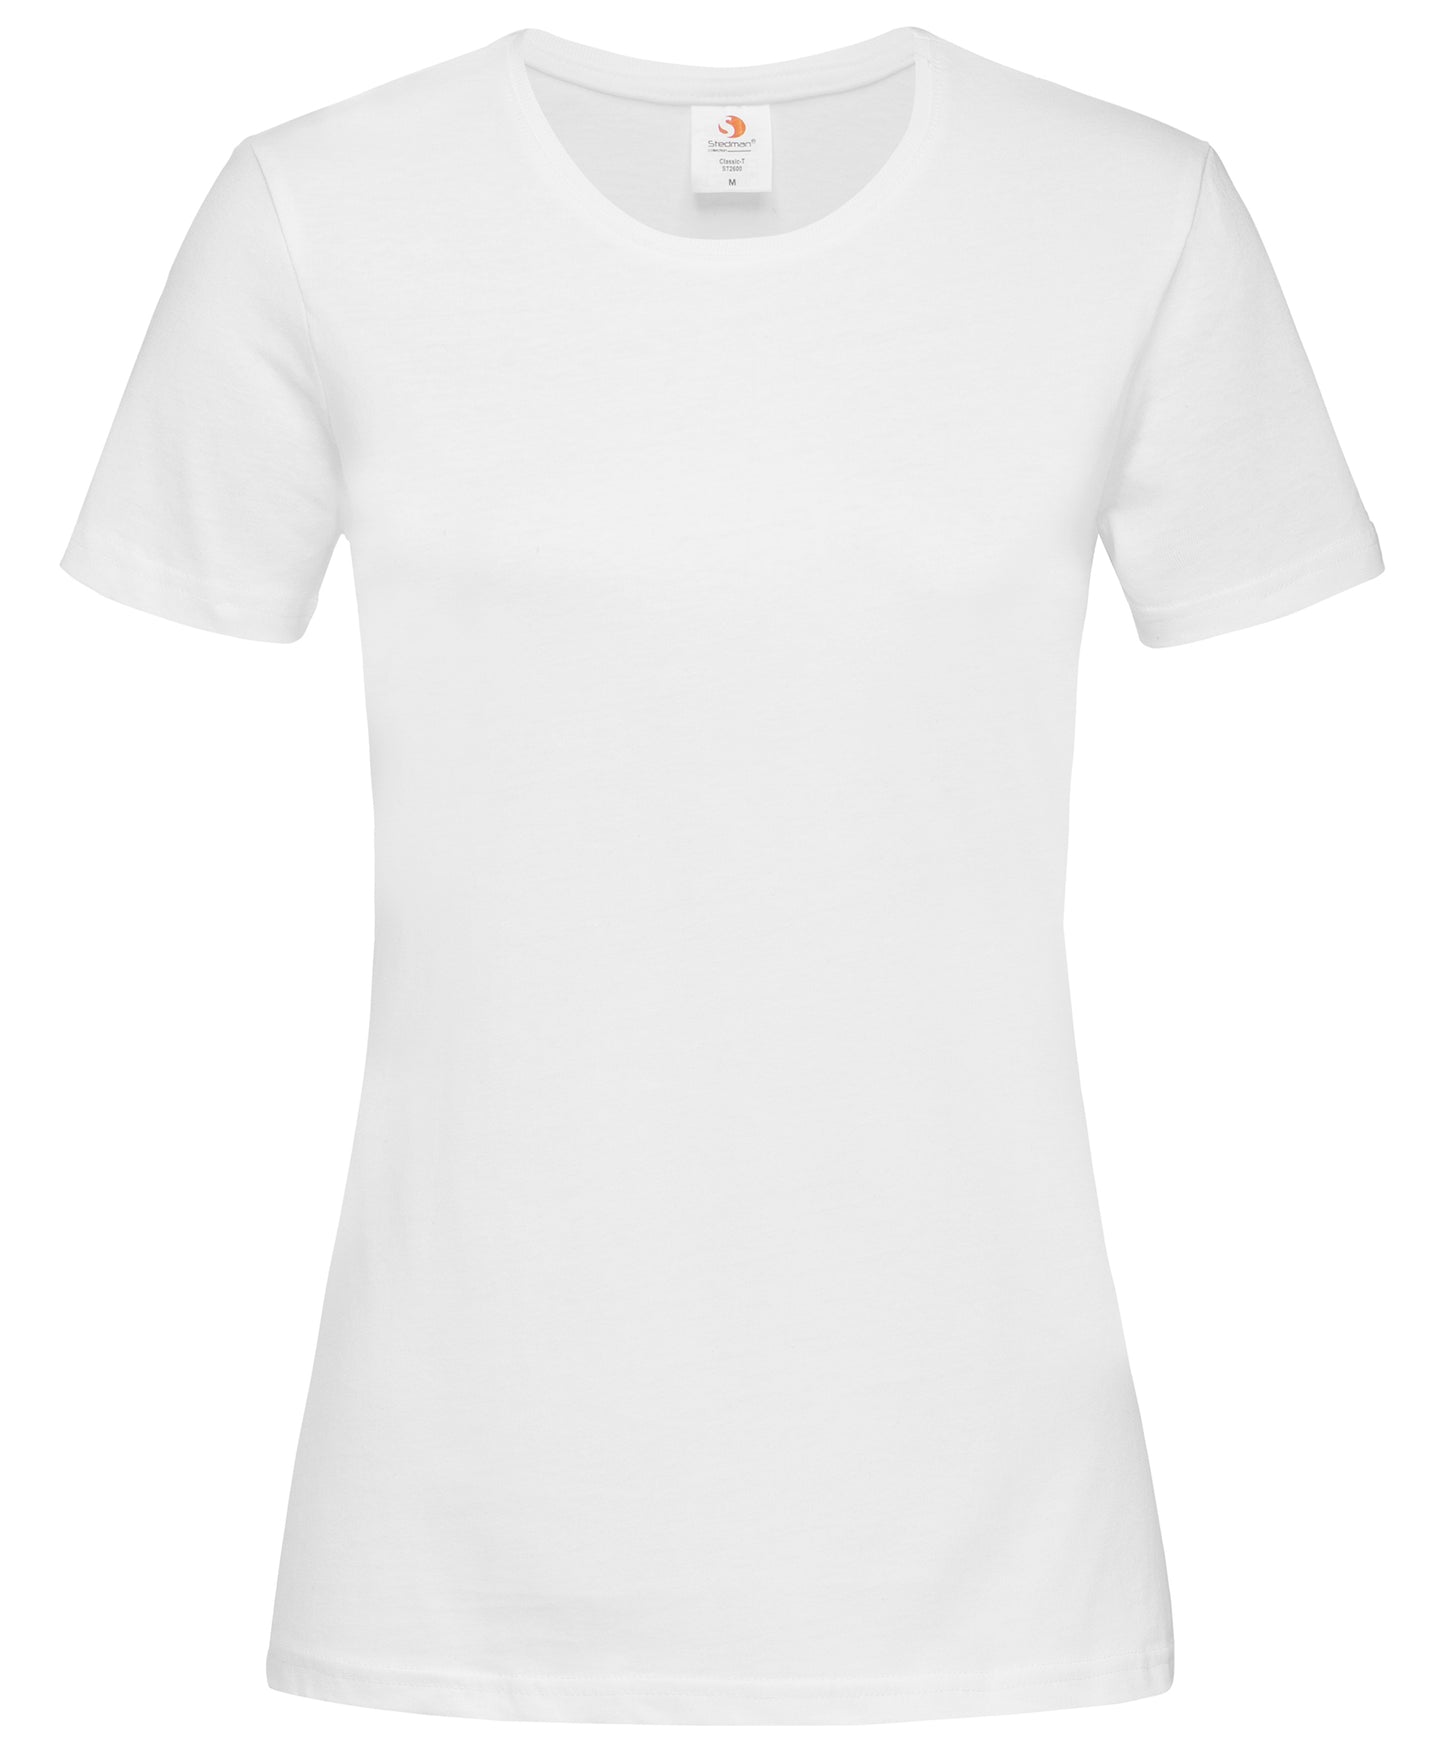 Stedman ST2600 Ladies Cotton Crew Neck T-Shirt